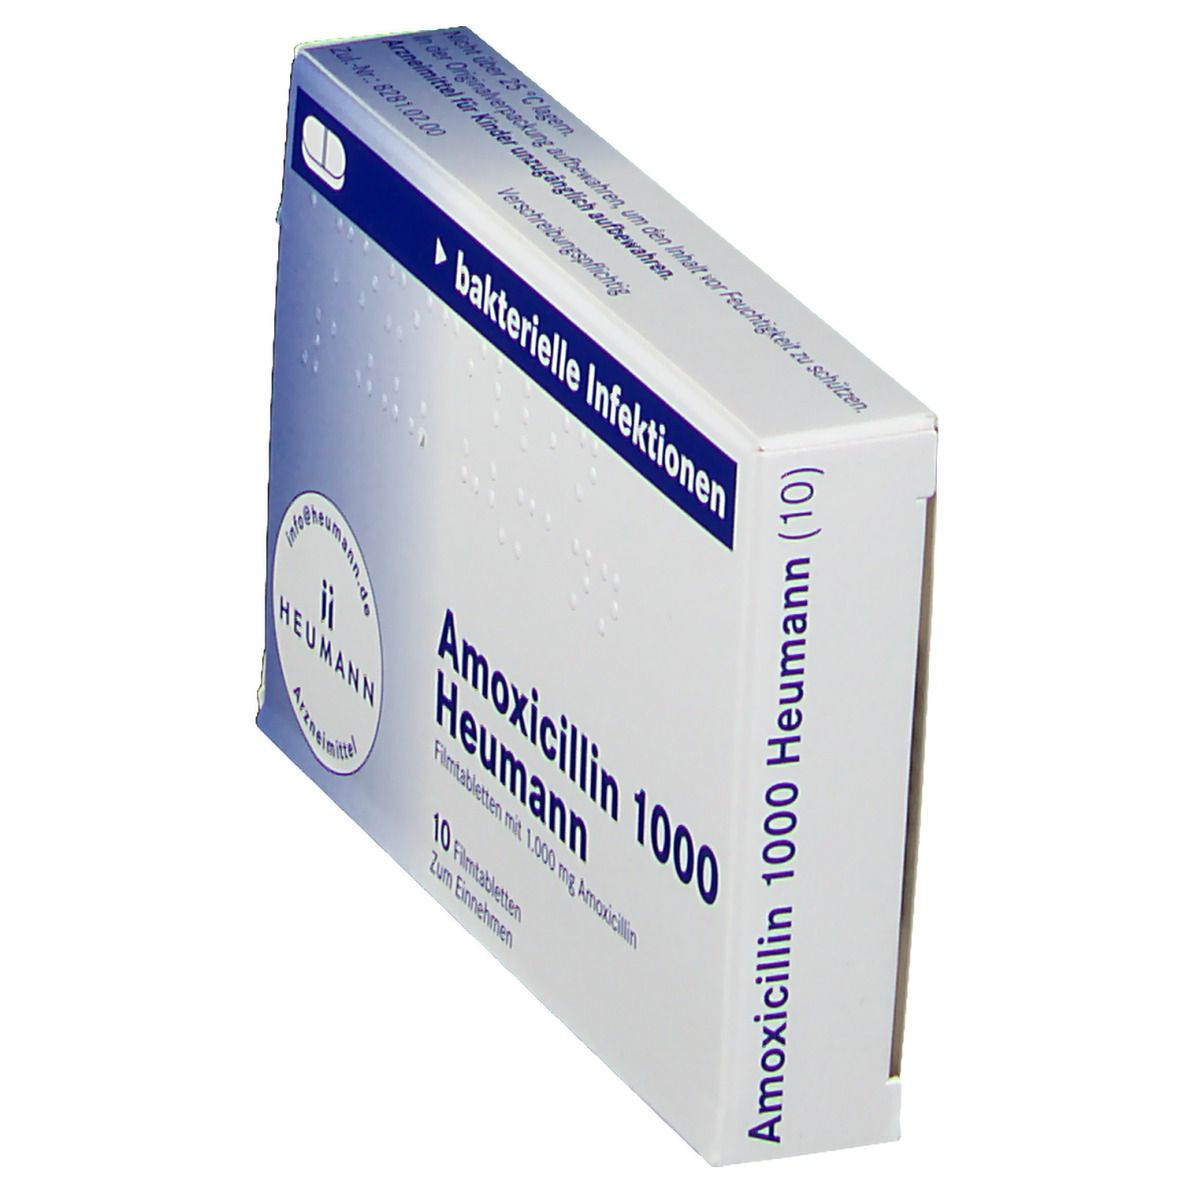 Amoxicillin 1000 Heumann